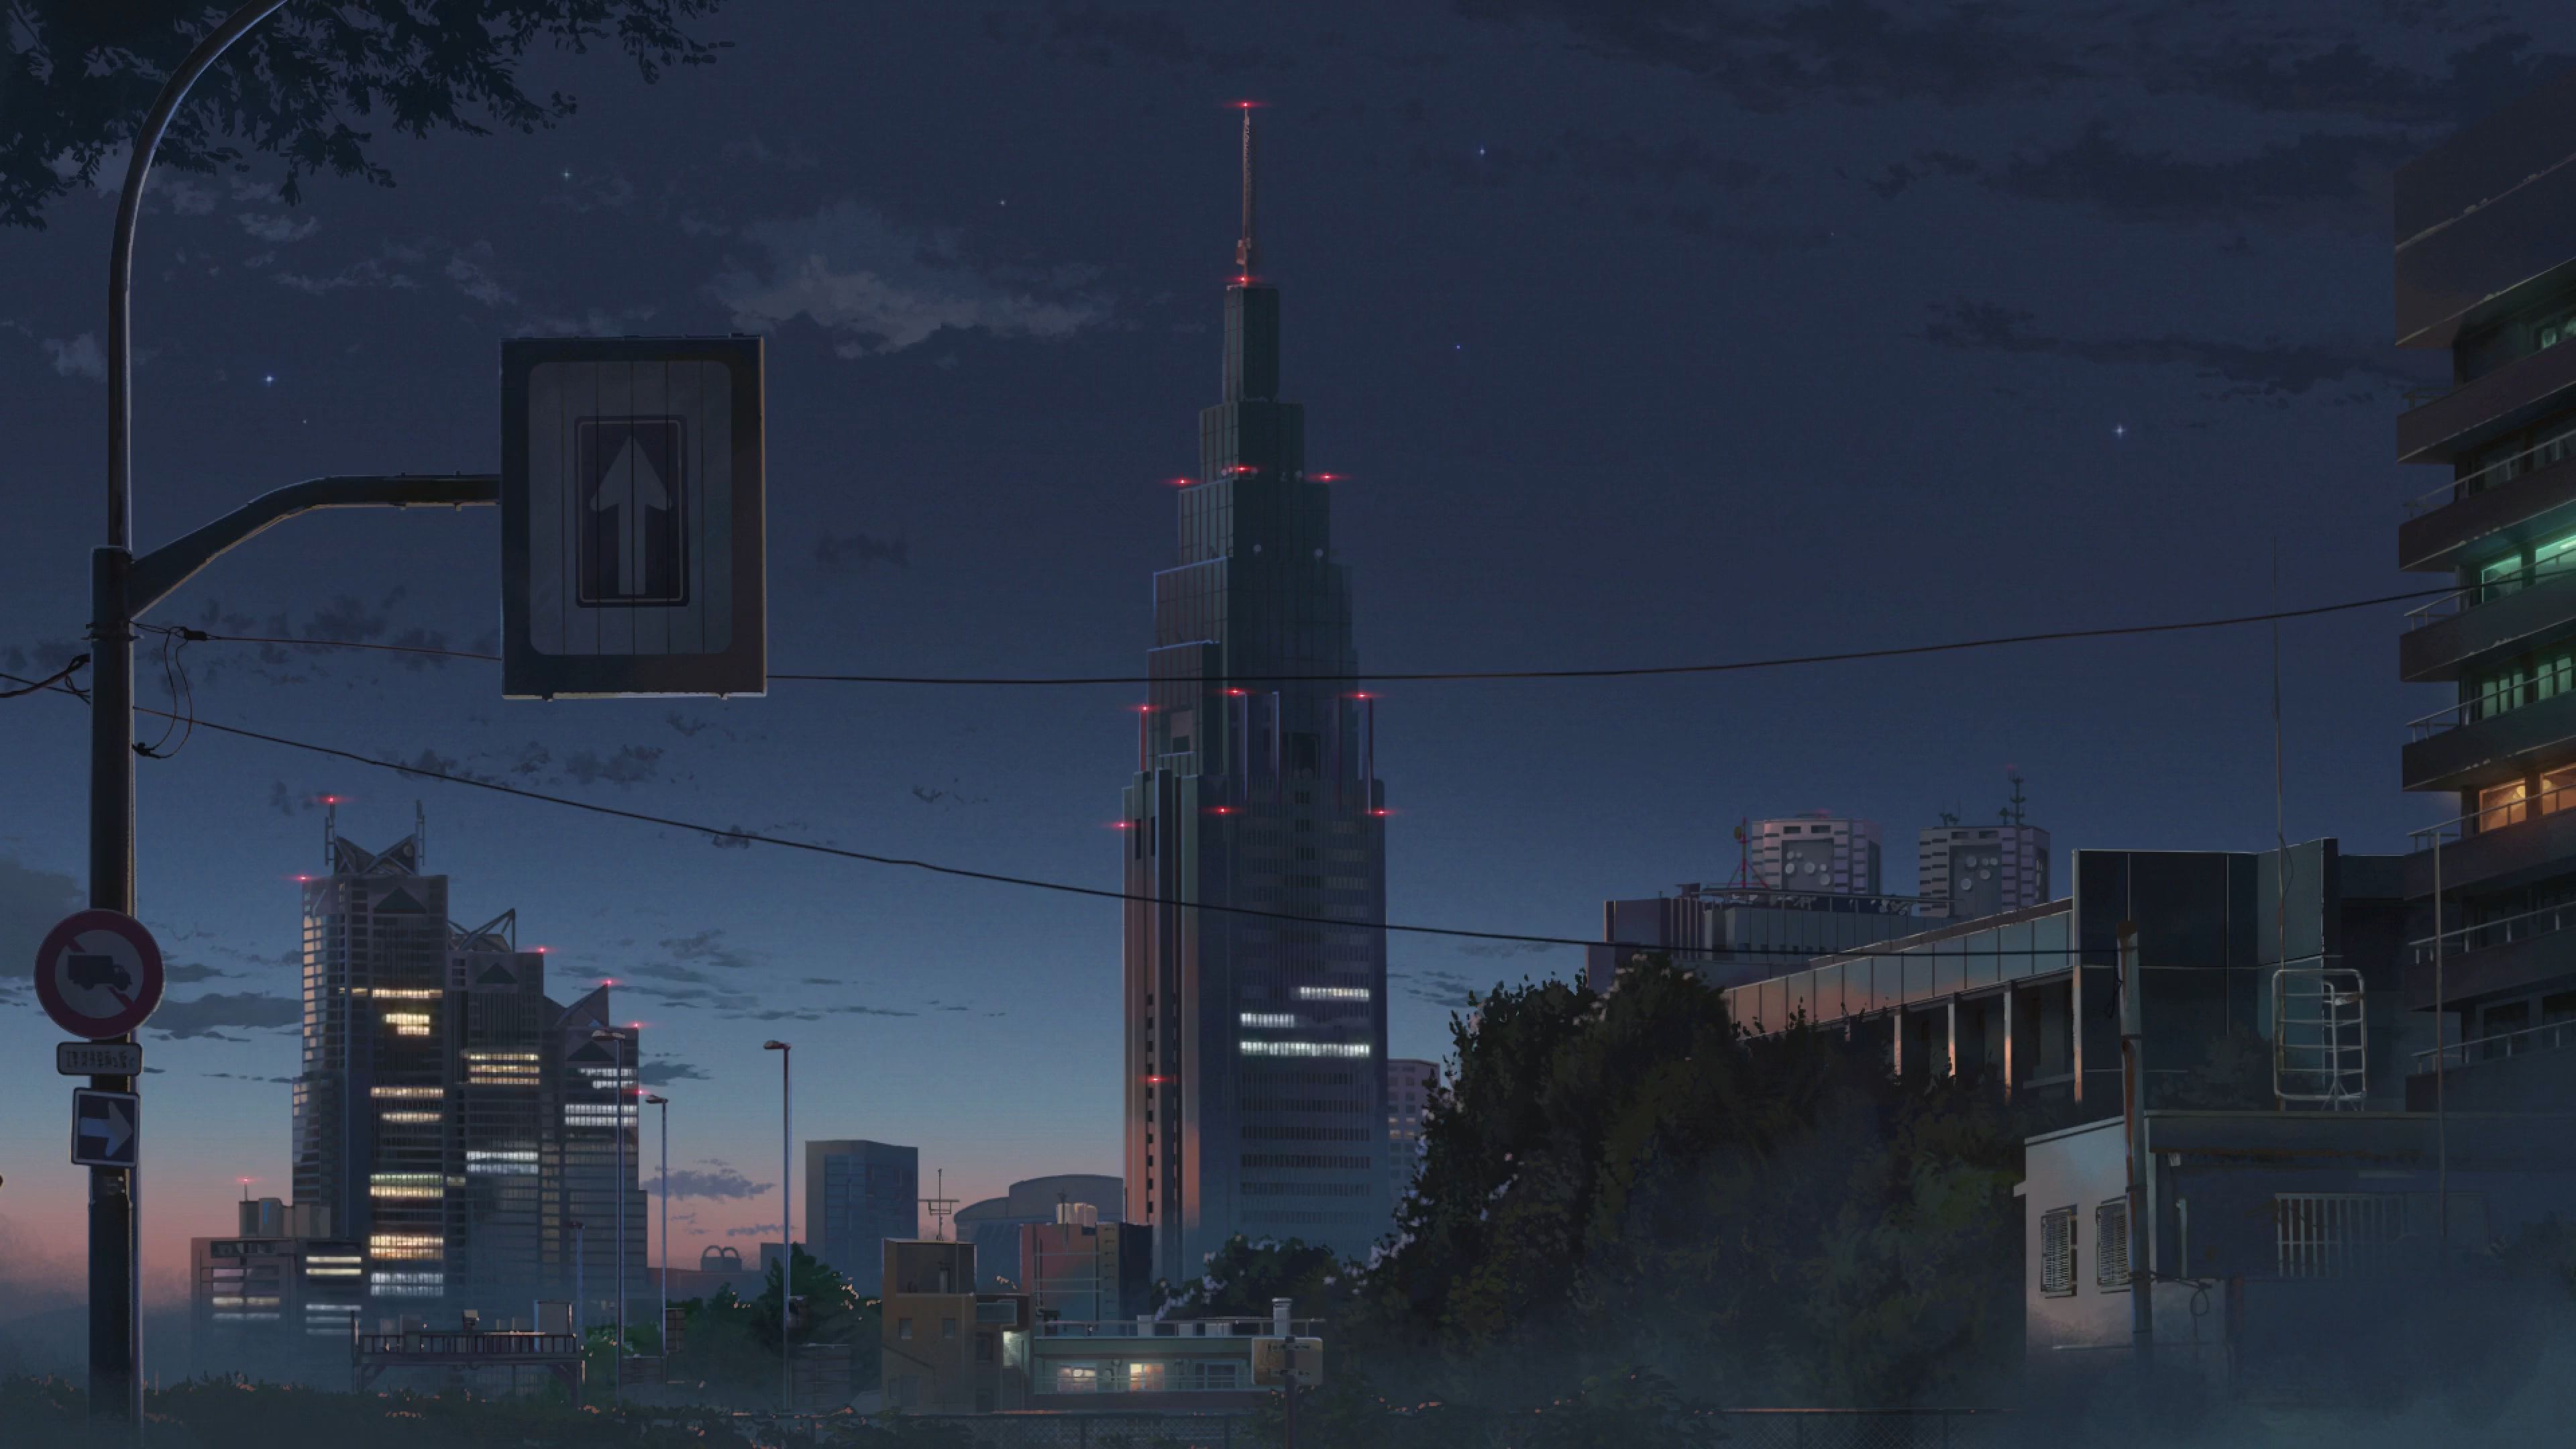 Anime City Wallpaper 4k